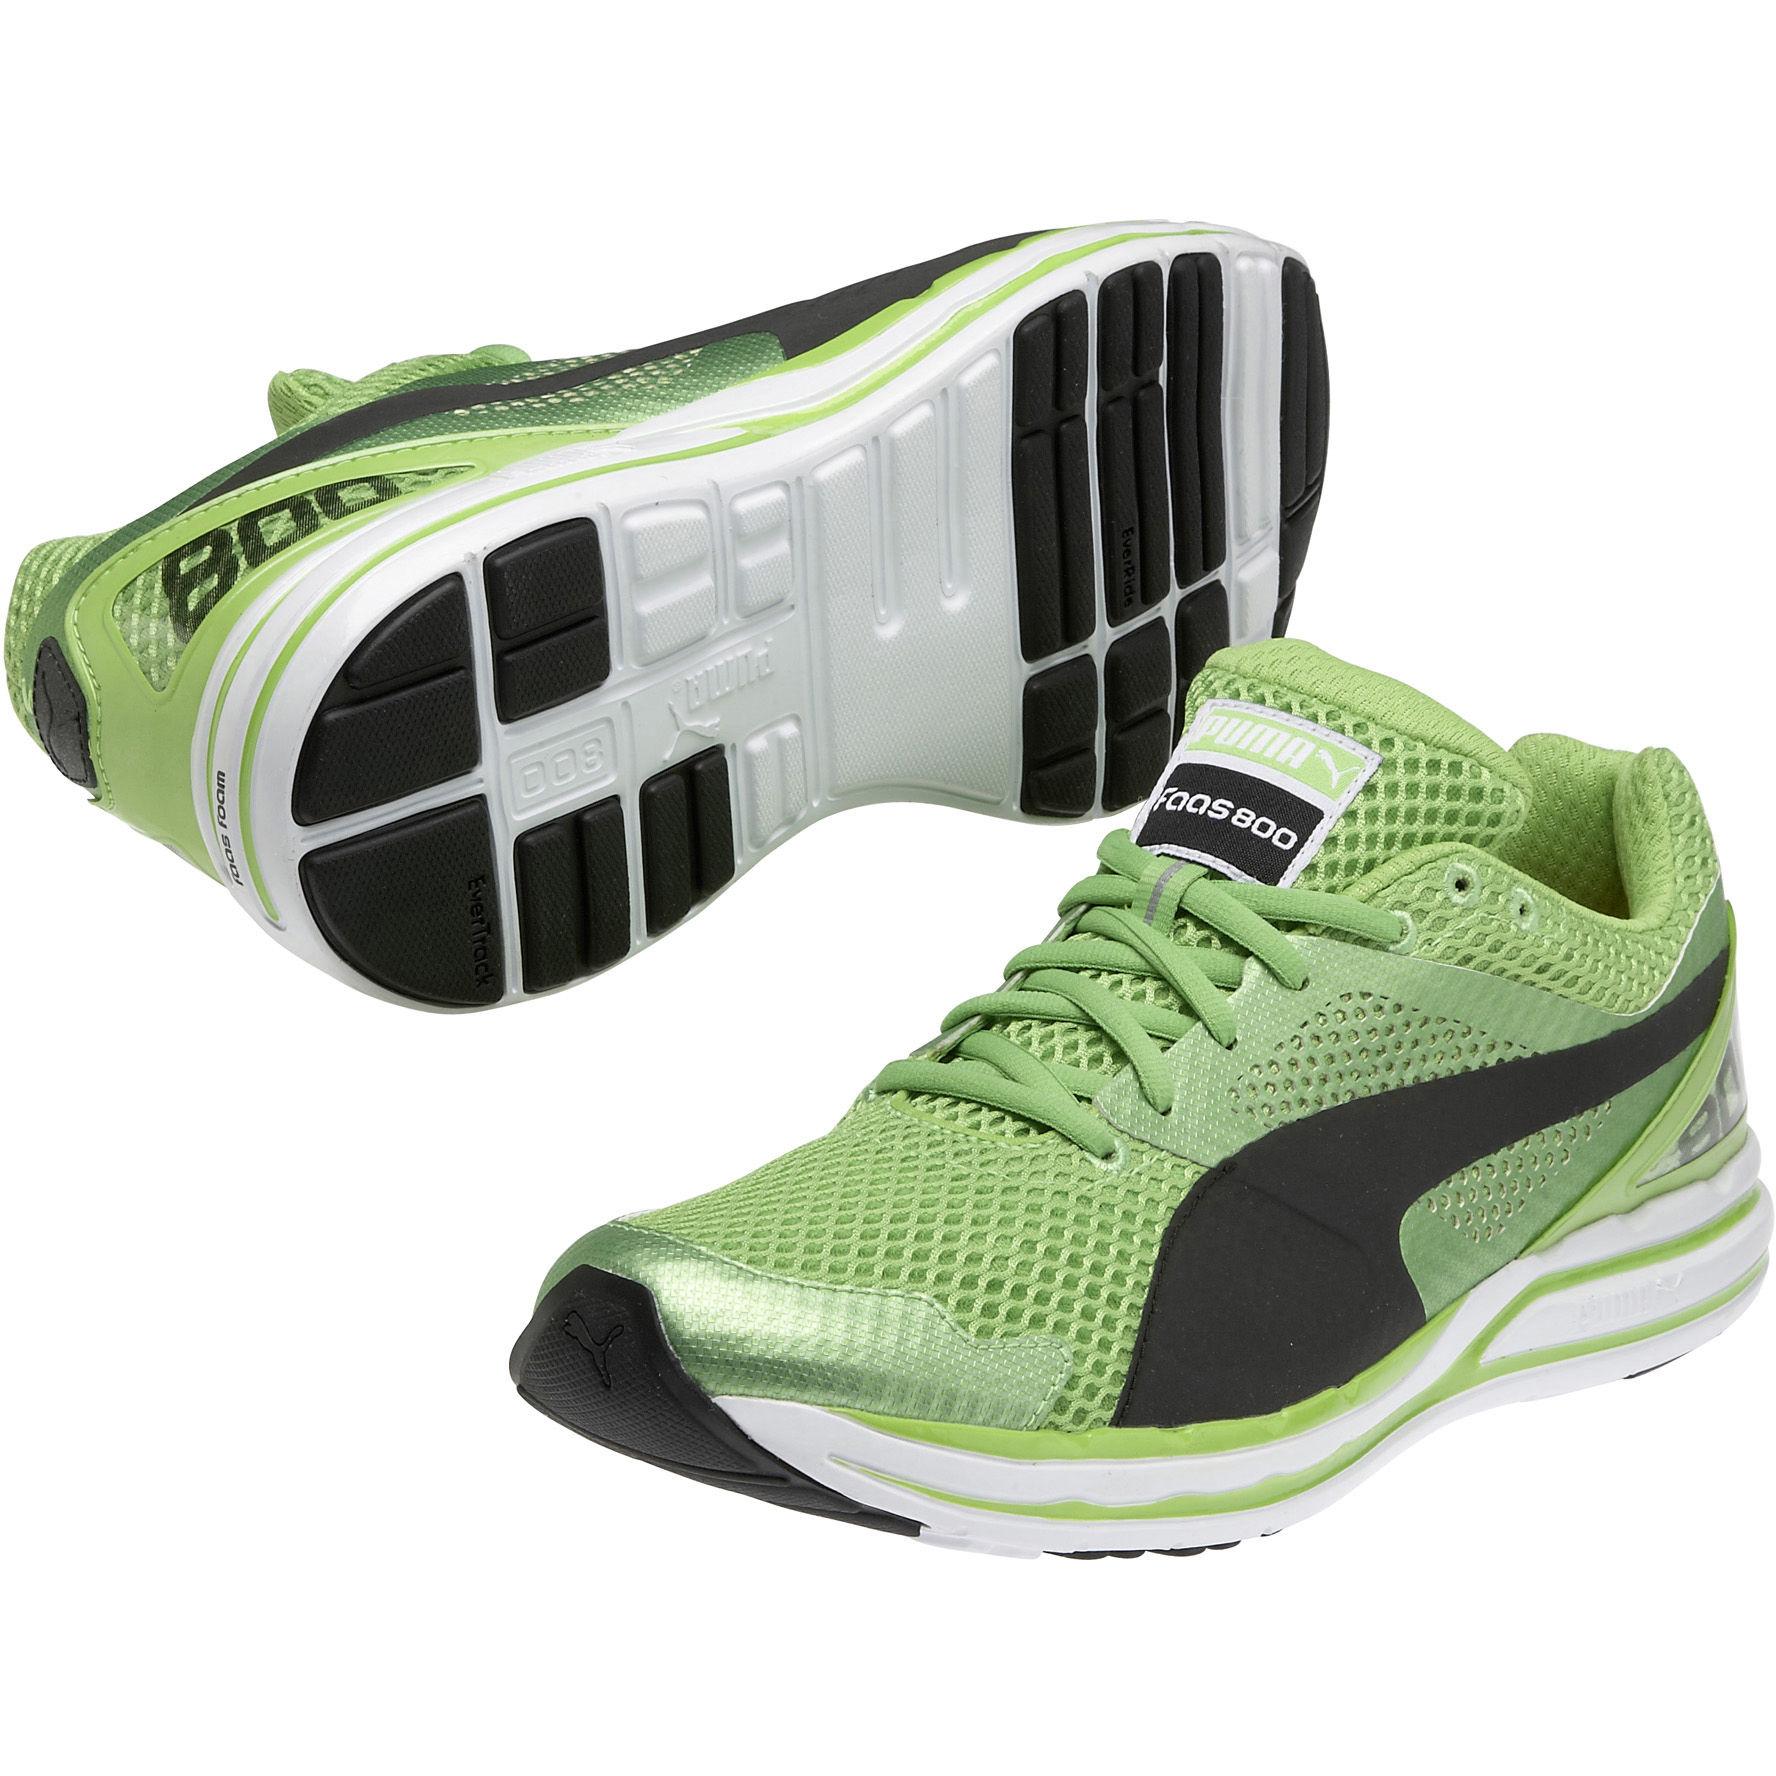 Foto Zapatillas de atletismo Puma - Faas 800 S - UK 7 Green/Black/White foto 550150